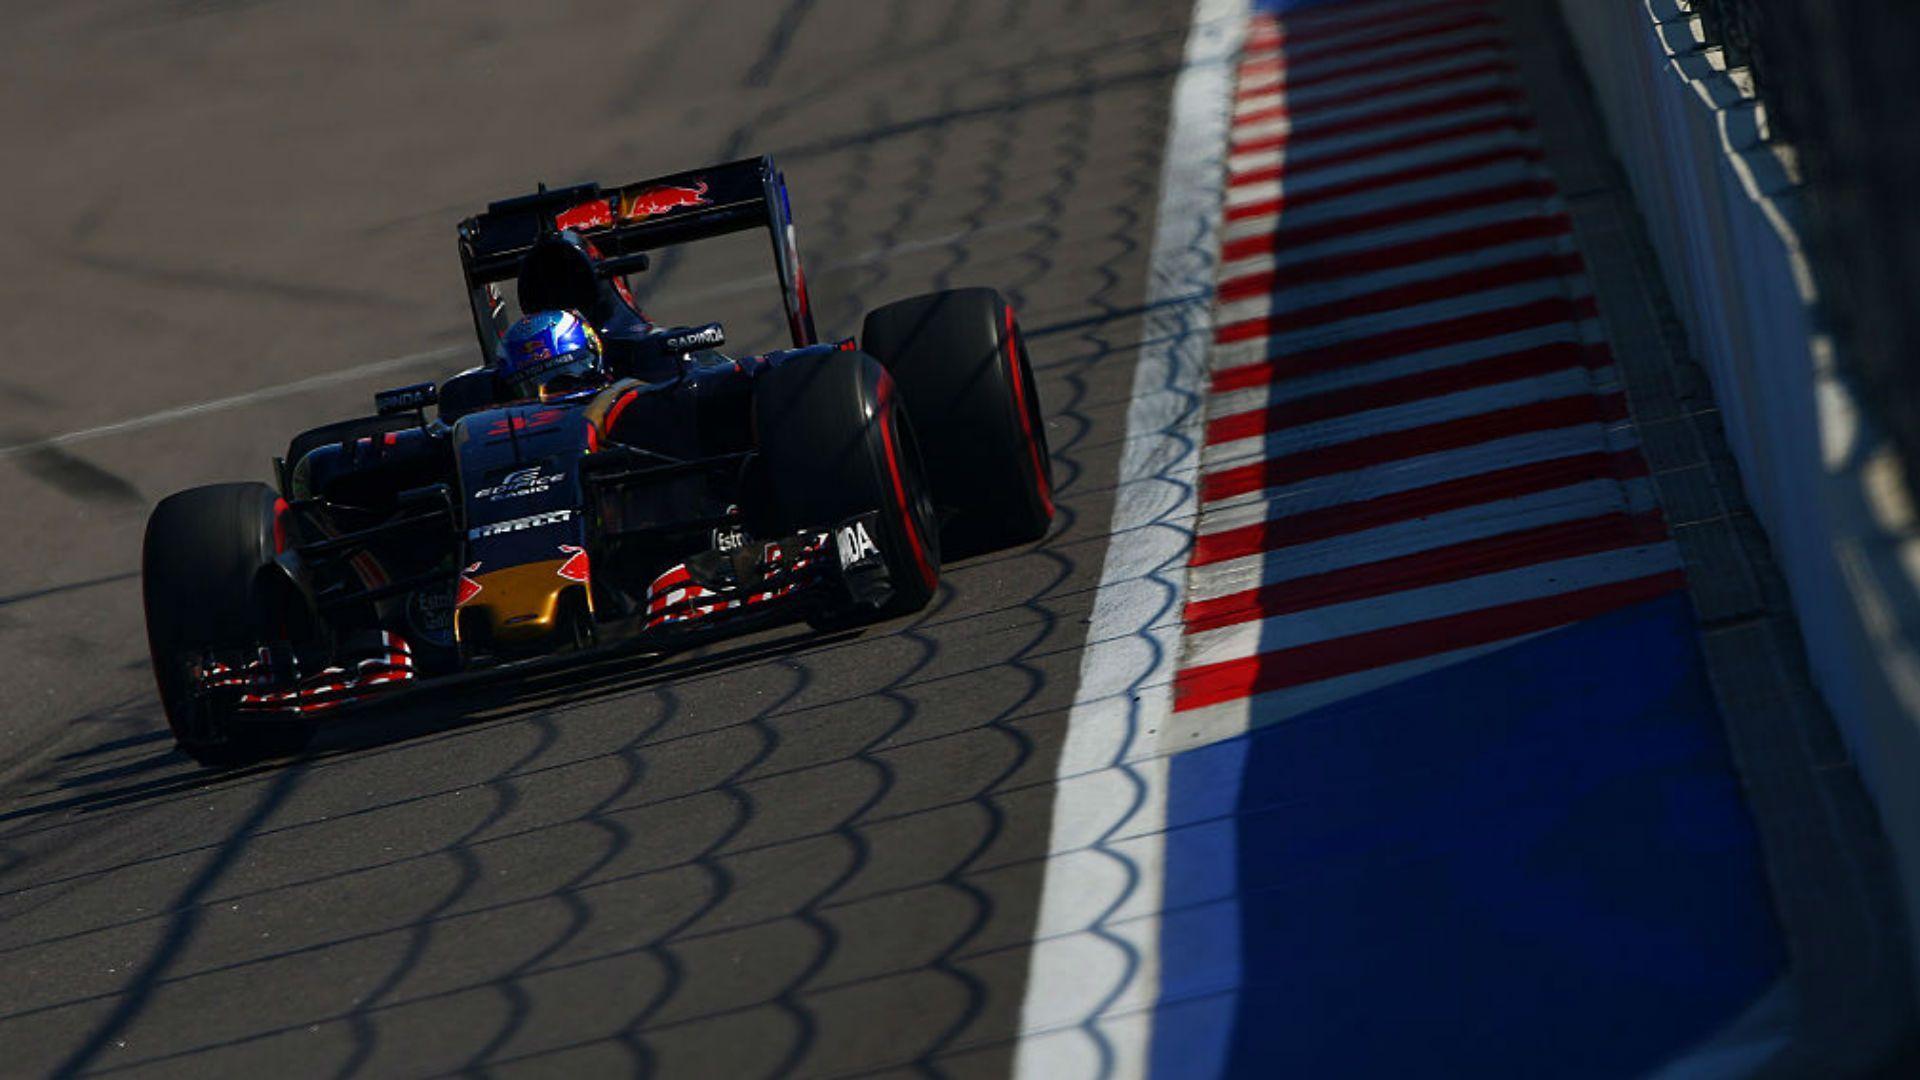 Max Verstappen replaces Daniil Kvyat at Red Bull